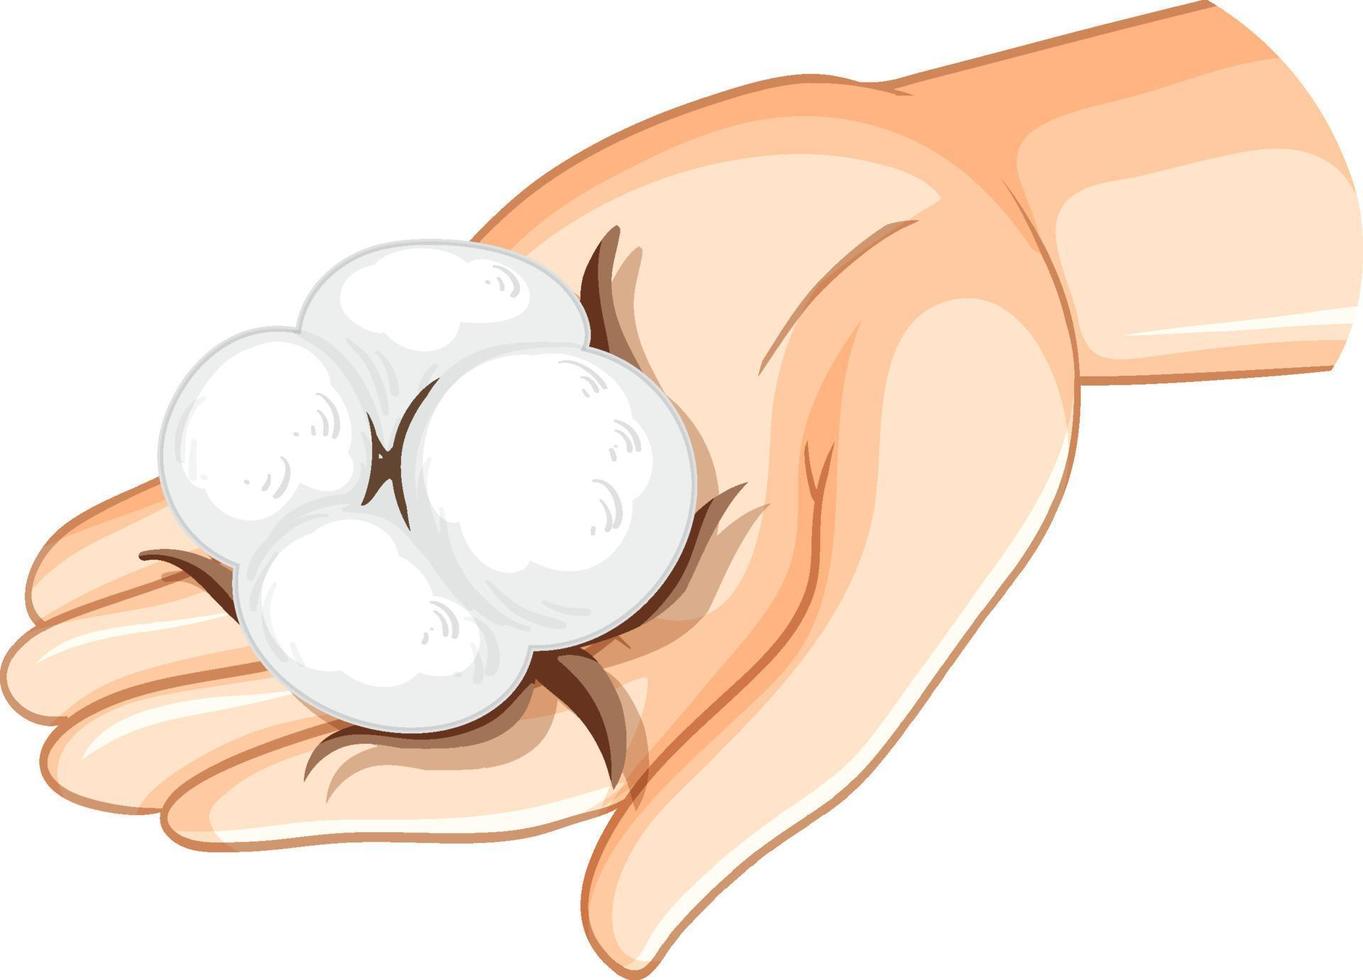 vit bomull på mänsklig hand vektor